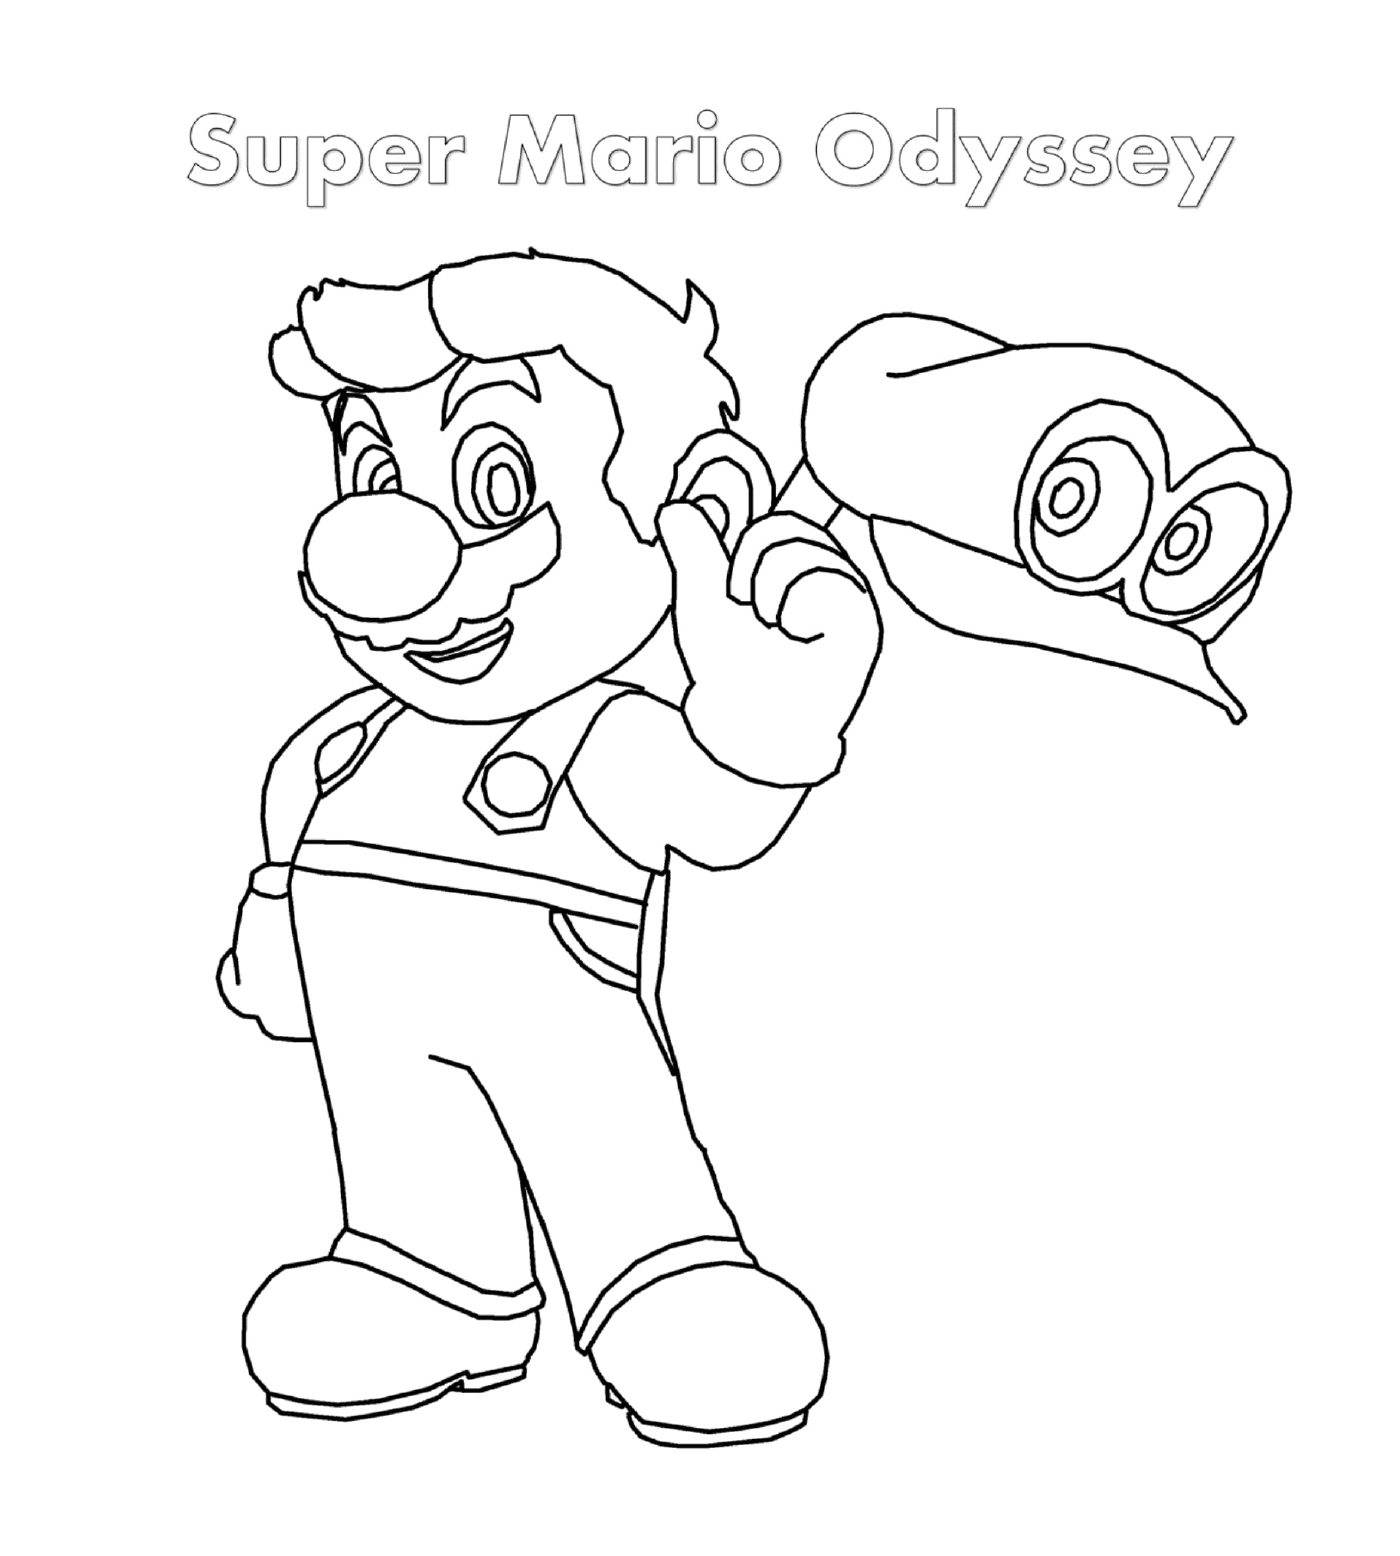   Super Mario Odyssey, une aventure épique 